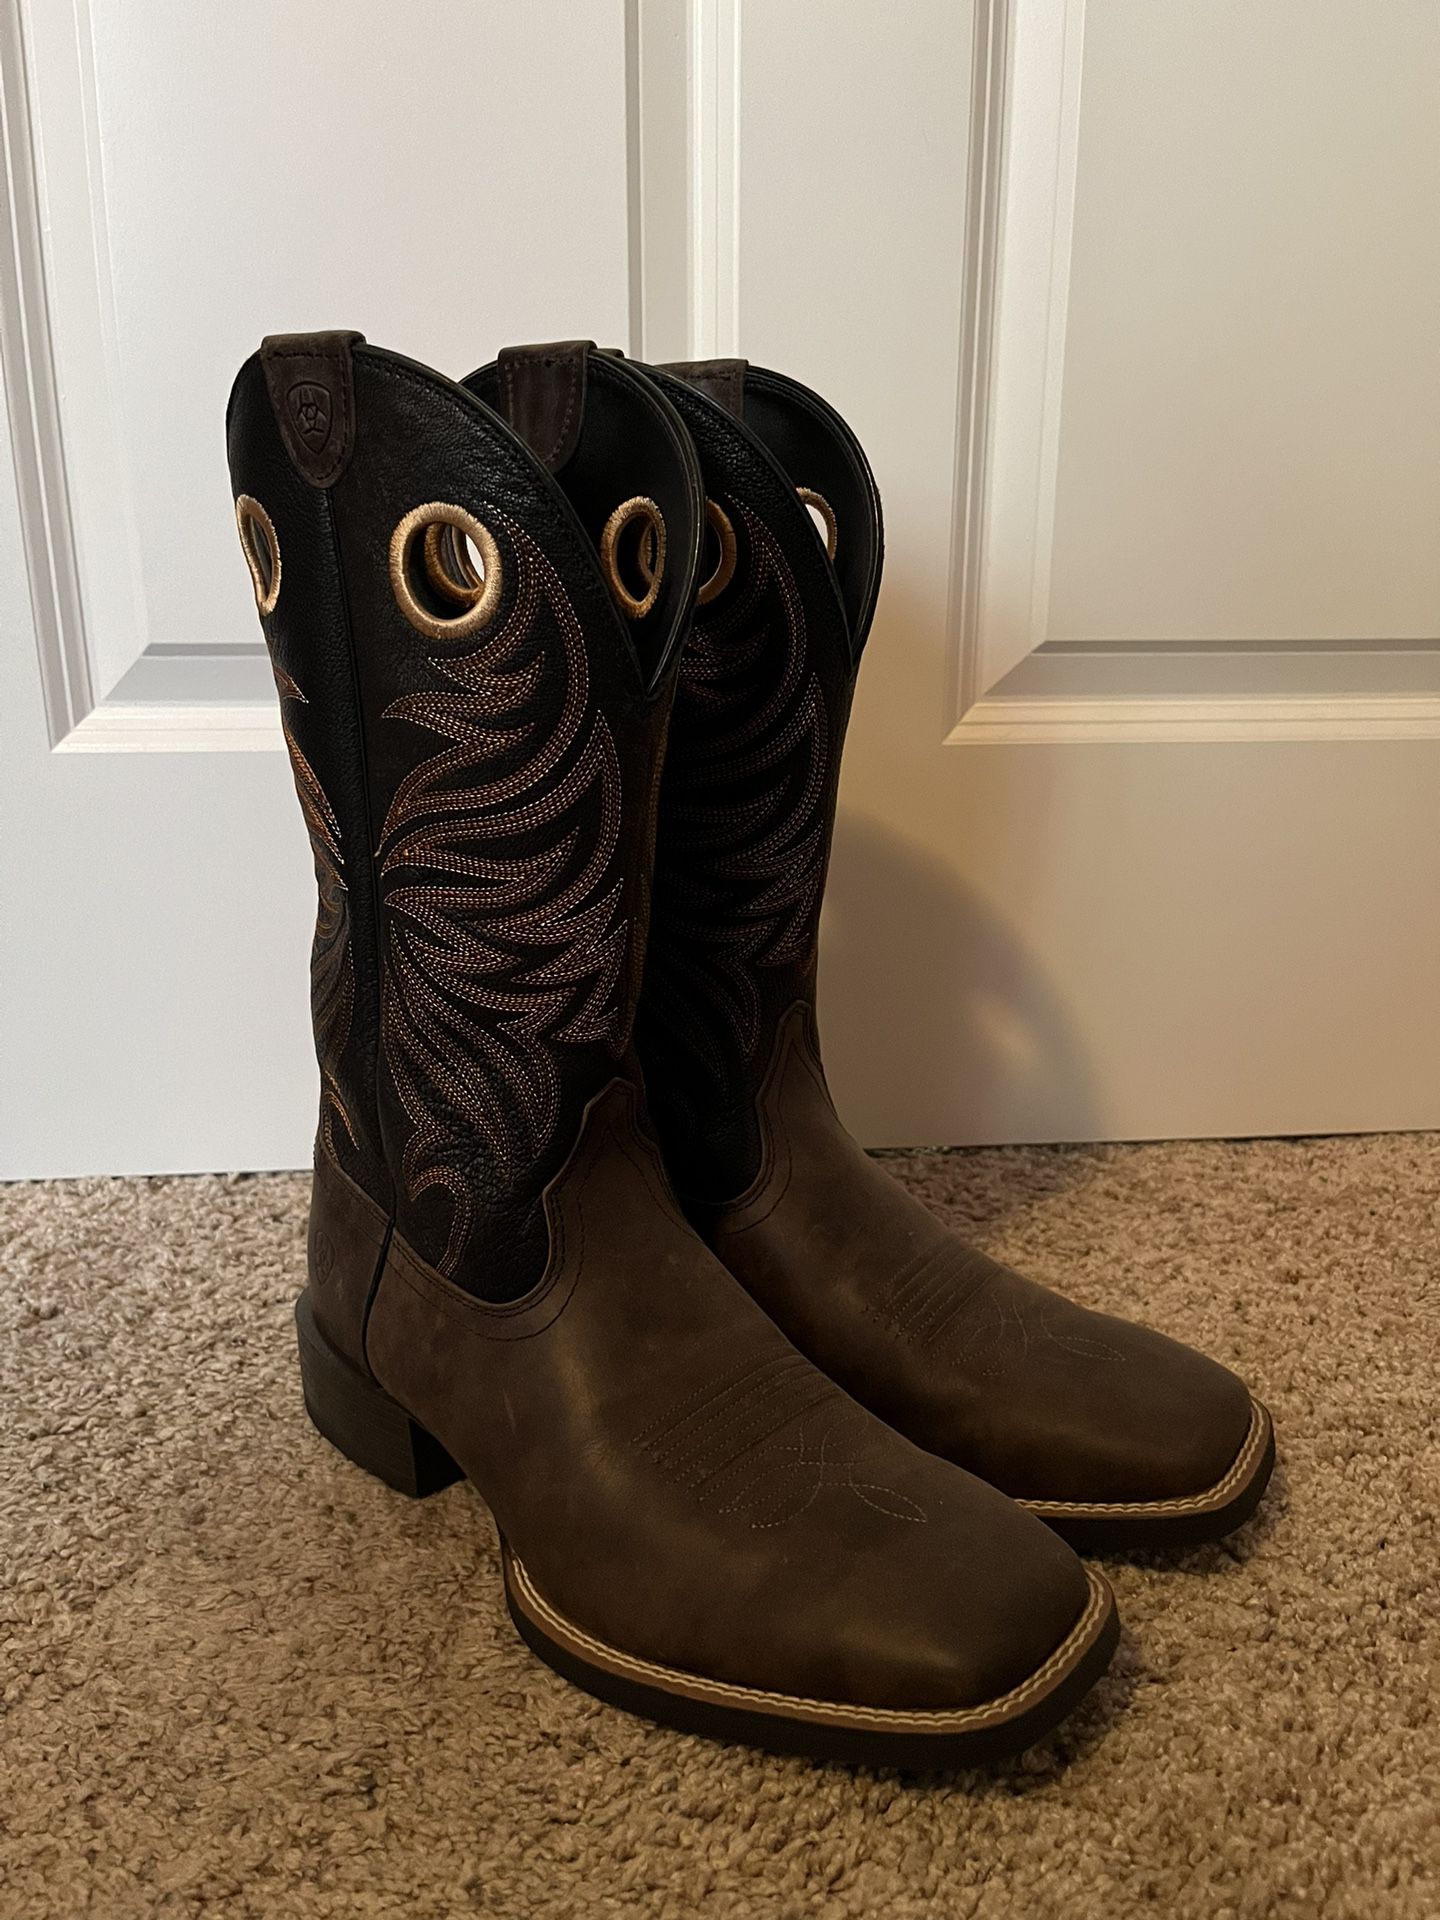 Ariat Men’s Cowboy Boots